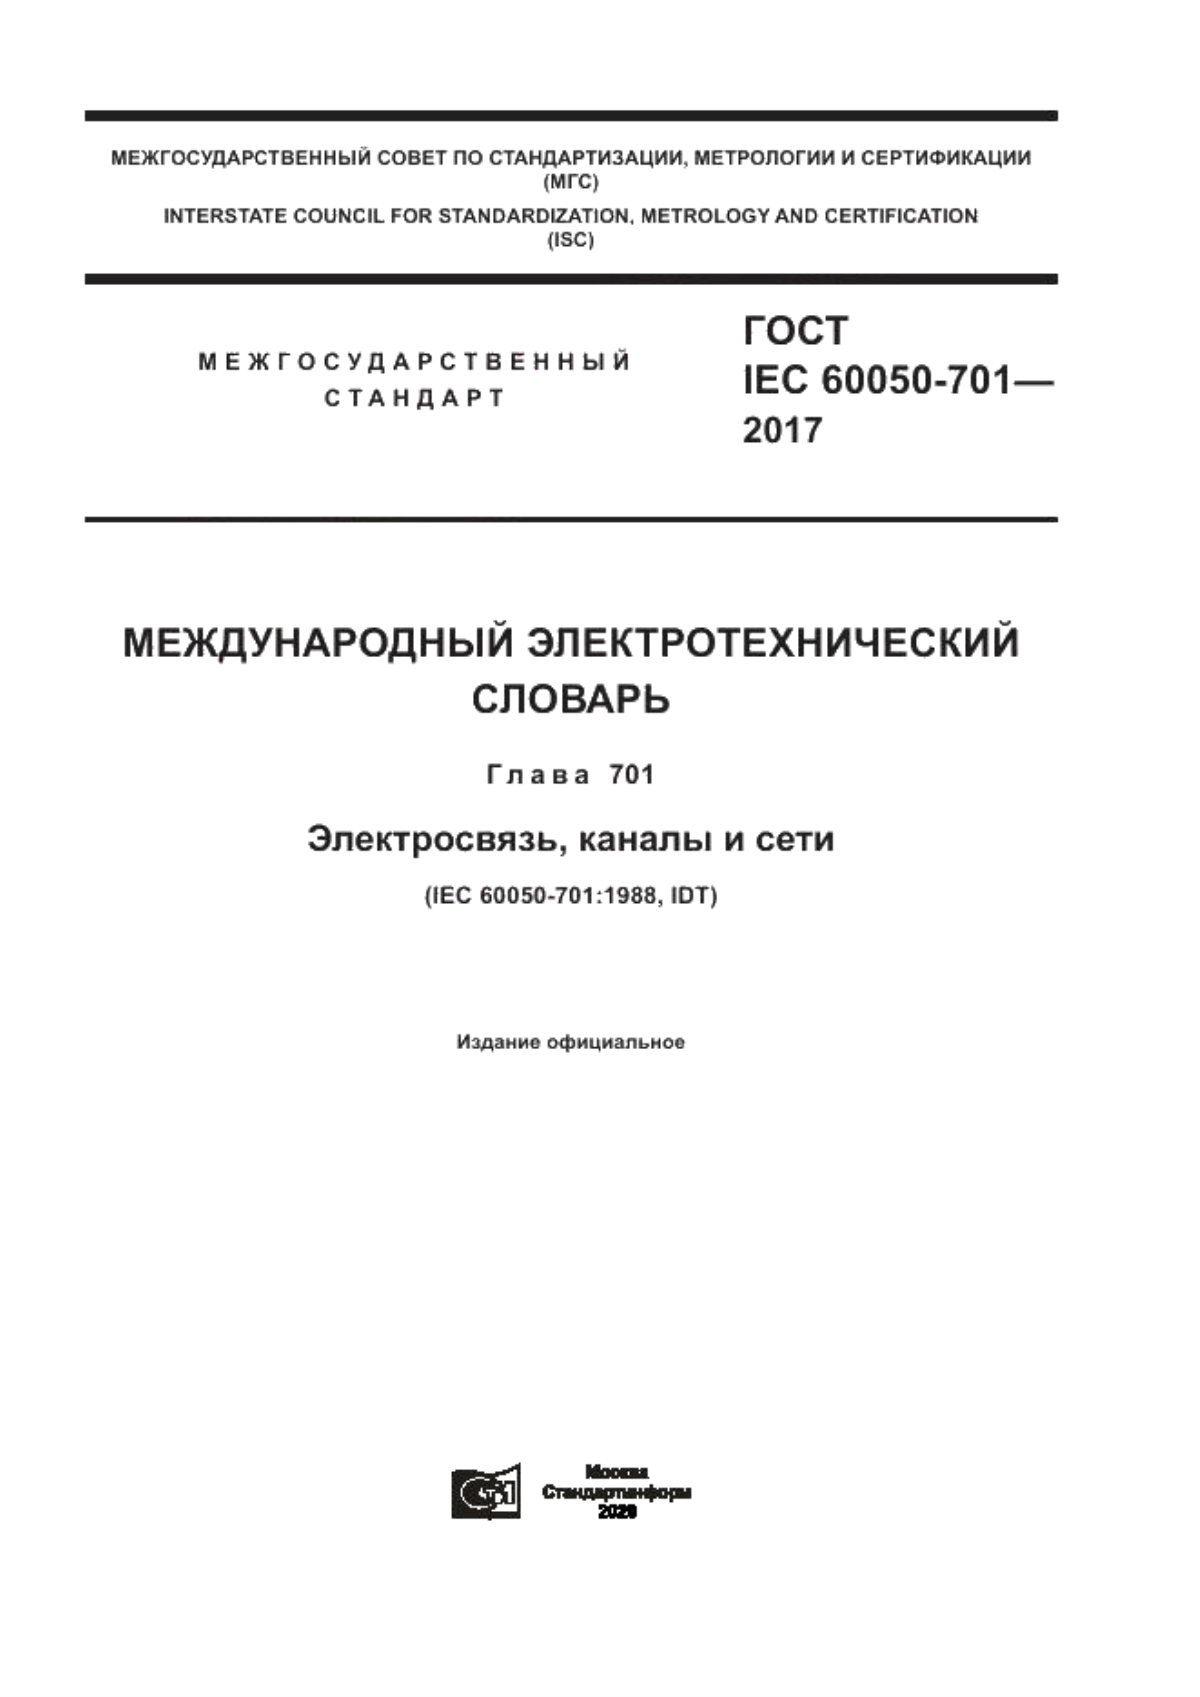 ГОСТ IEC 60050-701-2017 Международный электротехнический словарь. Глава 701. Электросвязь, каналы и сети